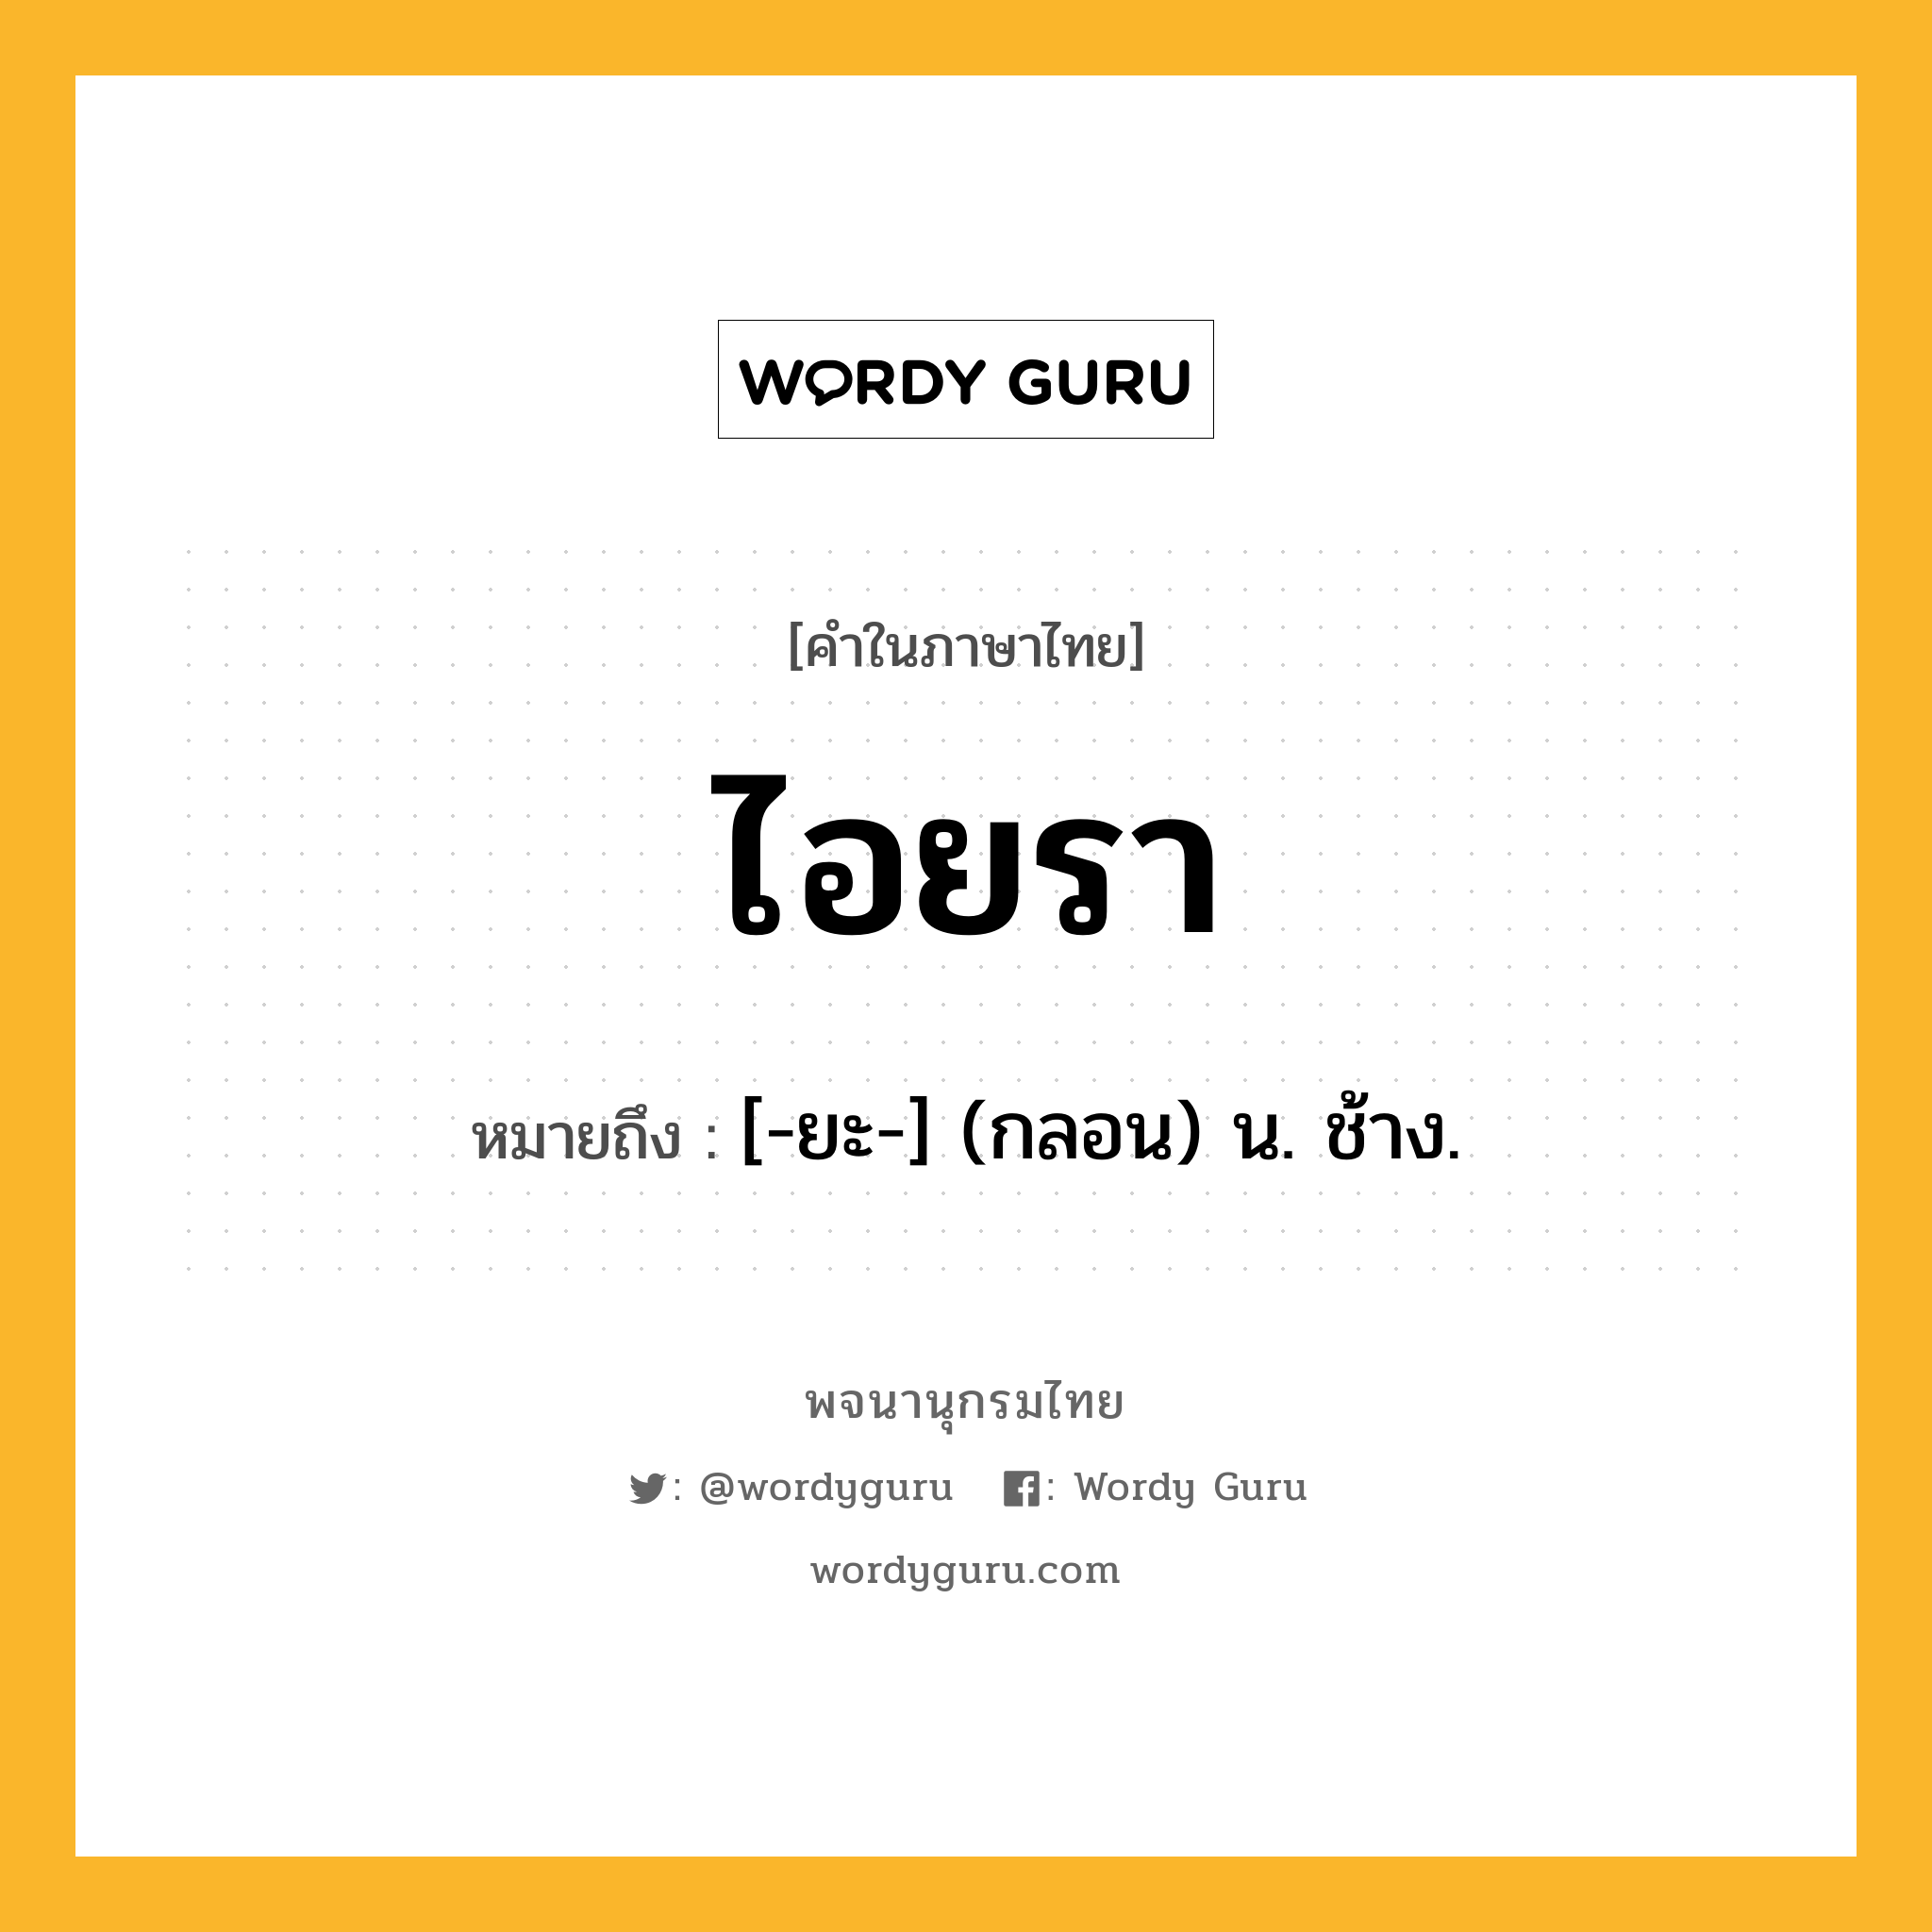 ไอยรา ความหมาย หมายถึงอะไร?, คำในภาษาไทย ไอยรา หมายถึง [-ยะ-] (กลอน) น. ช้าง.